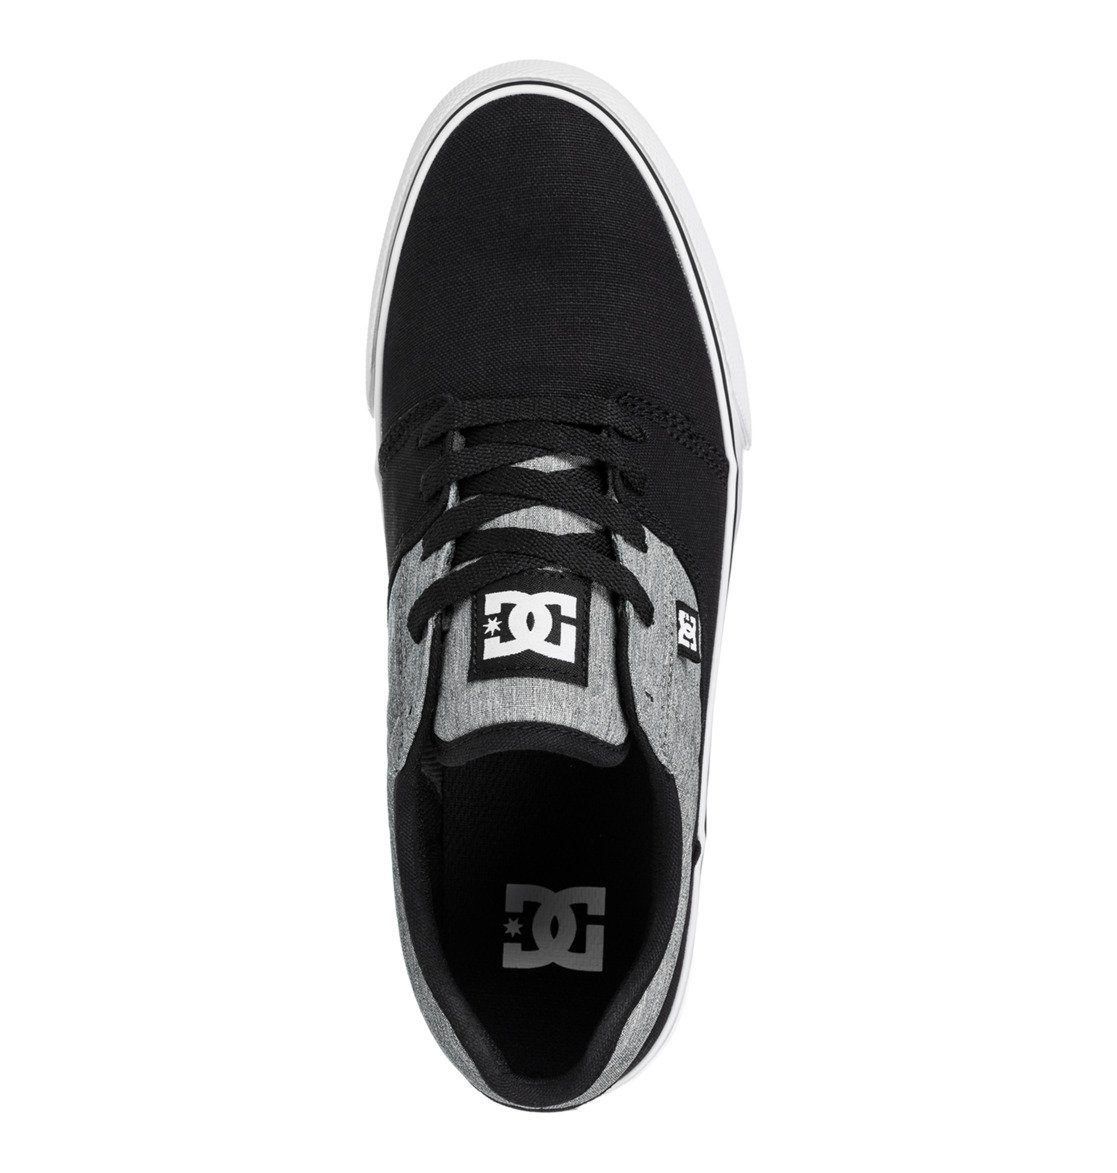 Sneaker Tonik Shoes Tx Battleship/Black Se DC